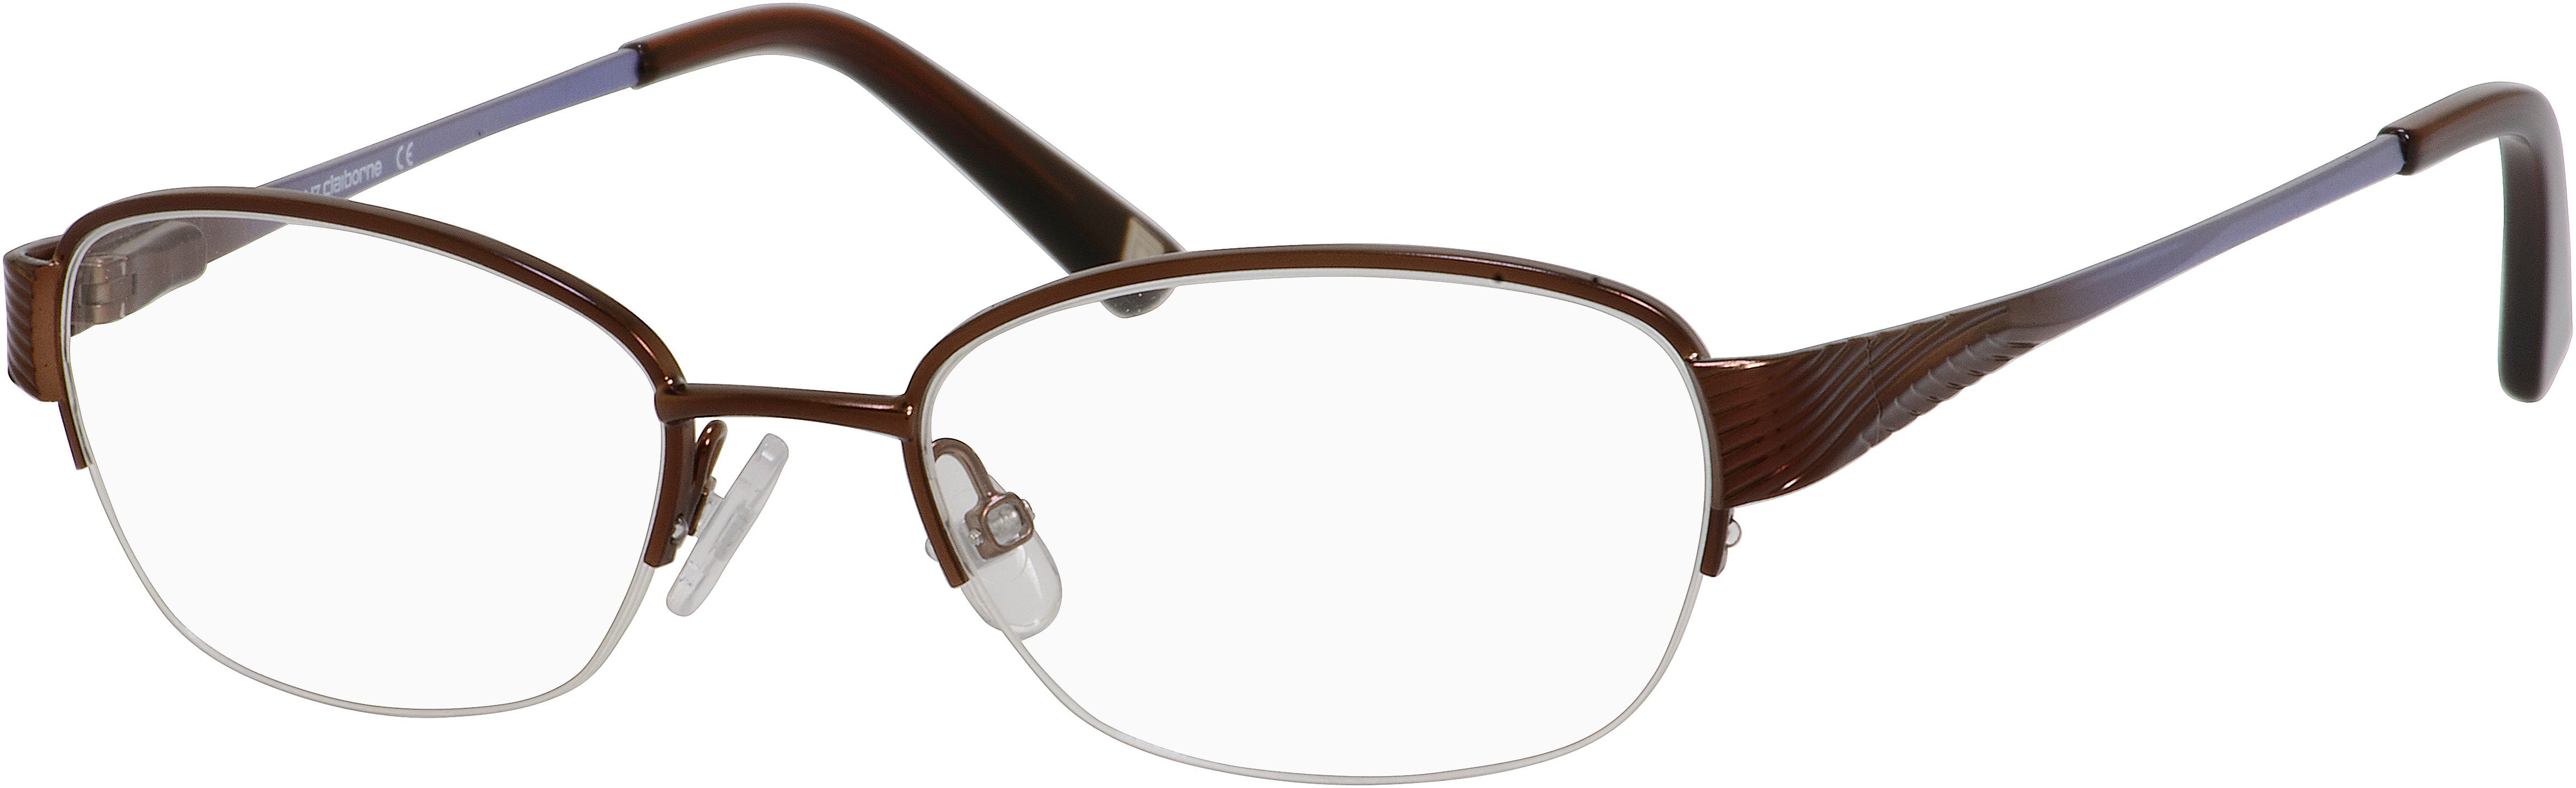  Liz Claiborne 426 Oval Eyeglasses 01J3-01J3  Brown (00 Demo Lens)